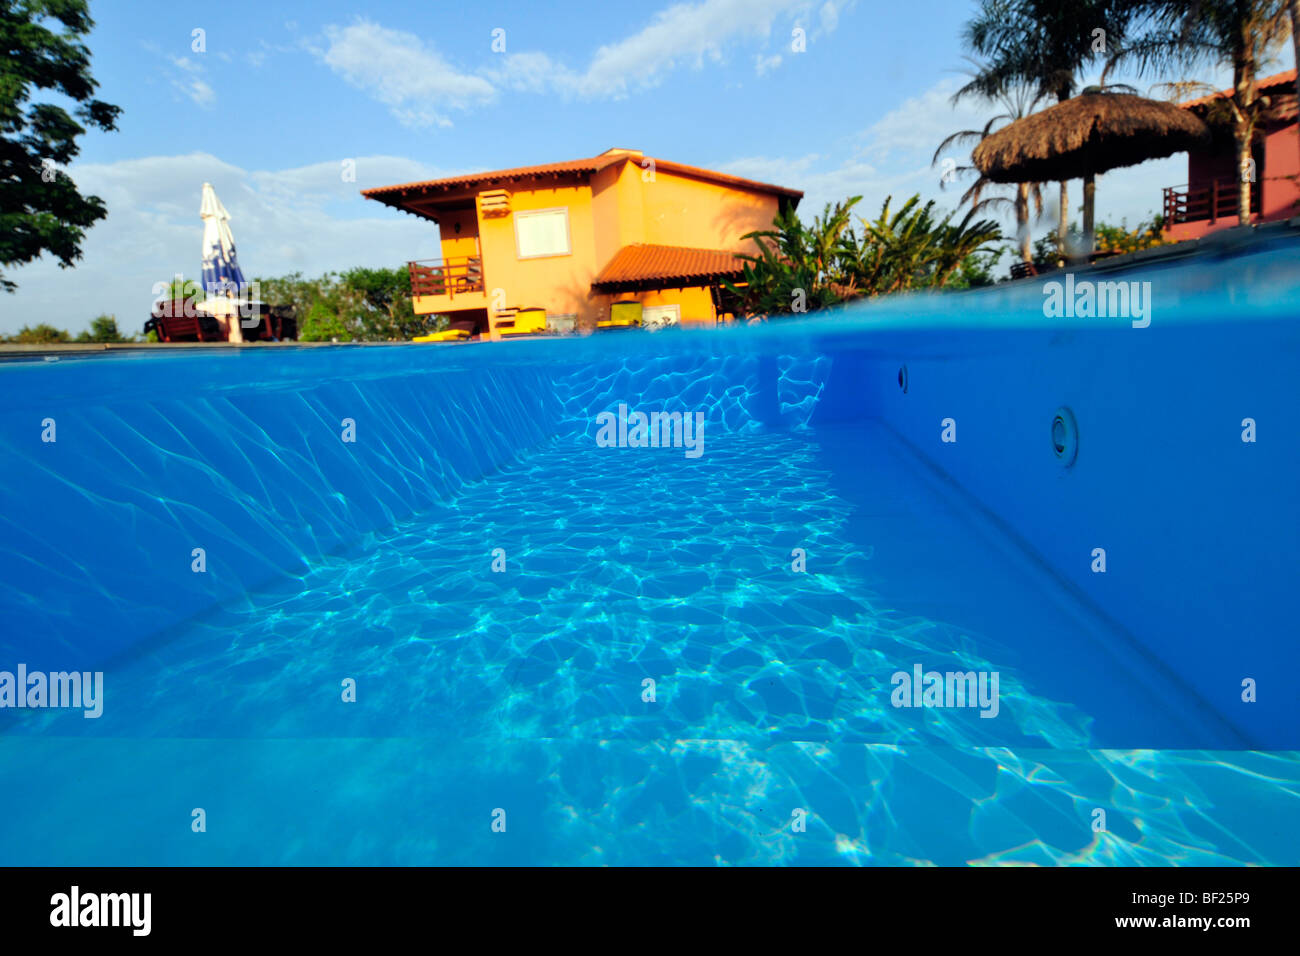 Swimming Pool in einem Hotel, Bonito, Mato Grosso do Sul Brasilien Stockfoto